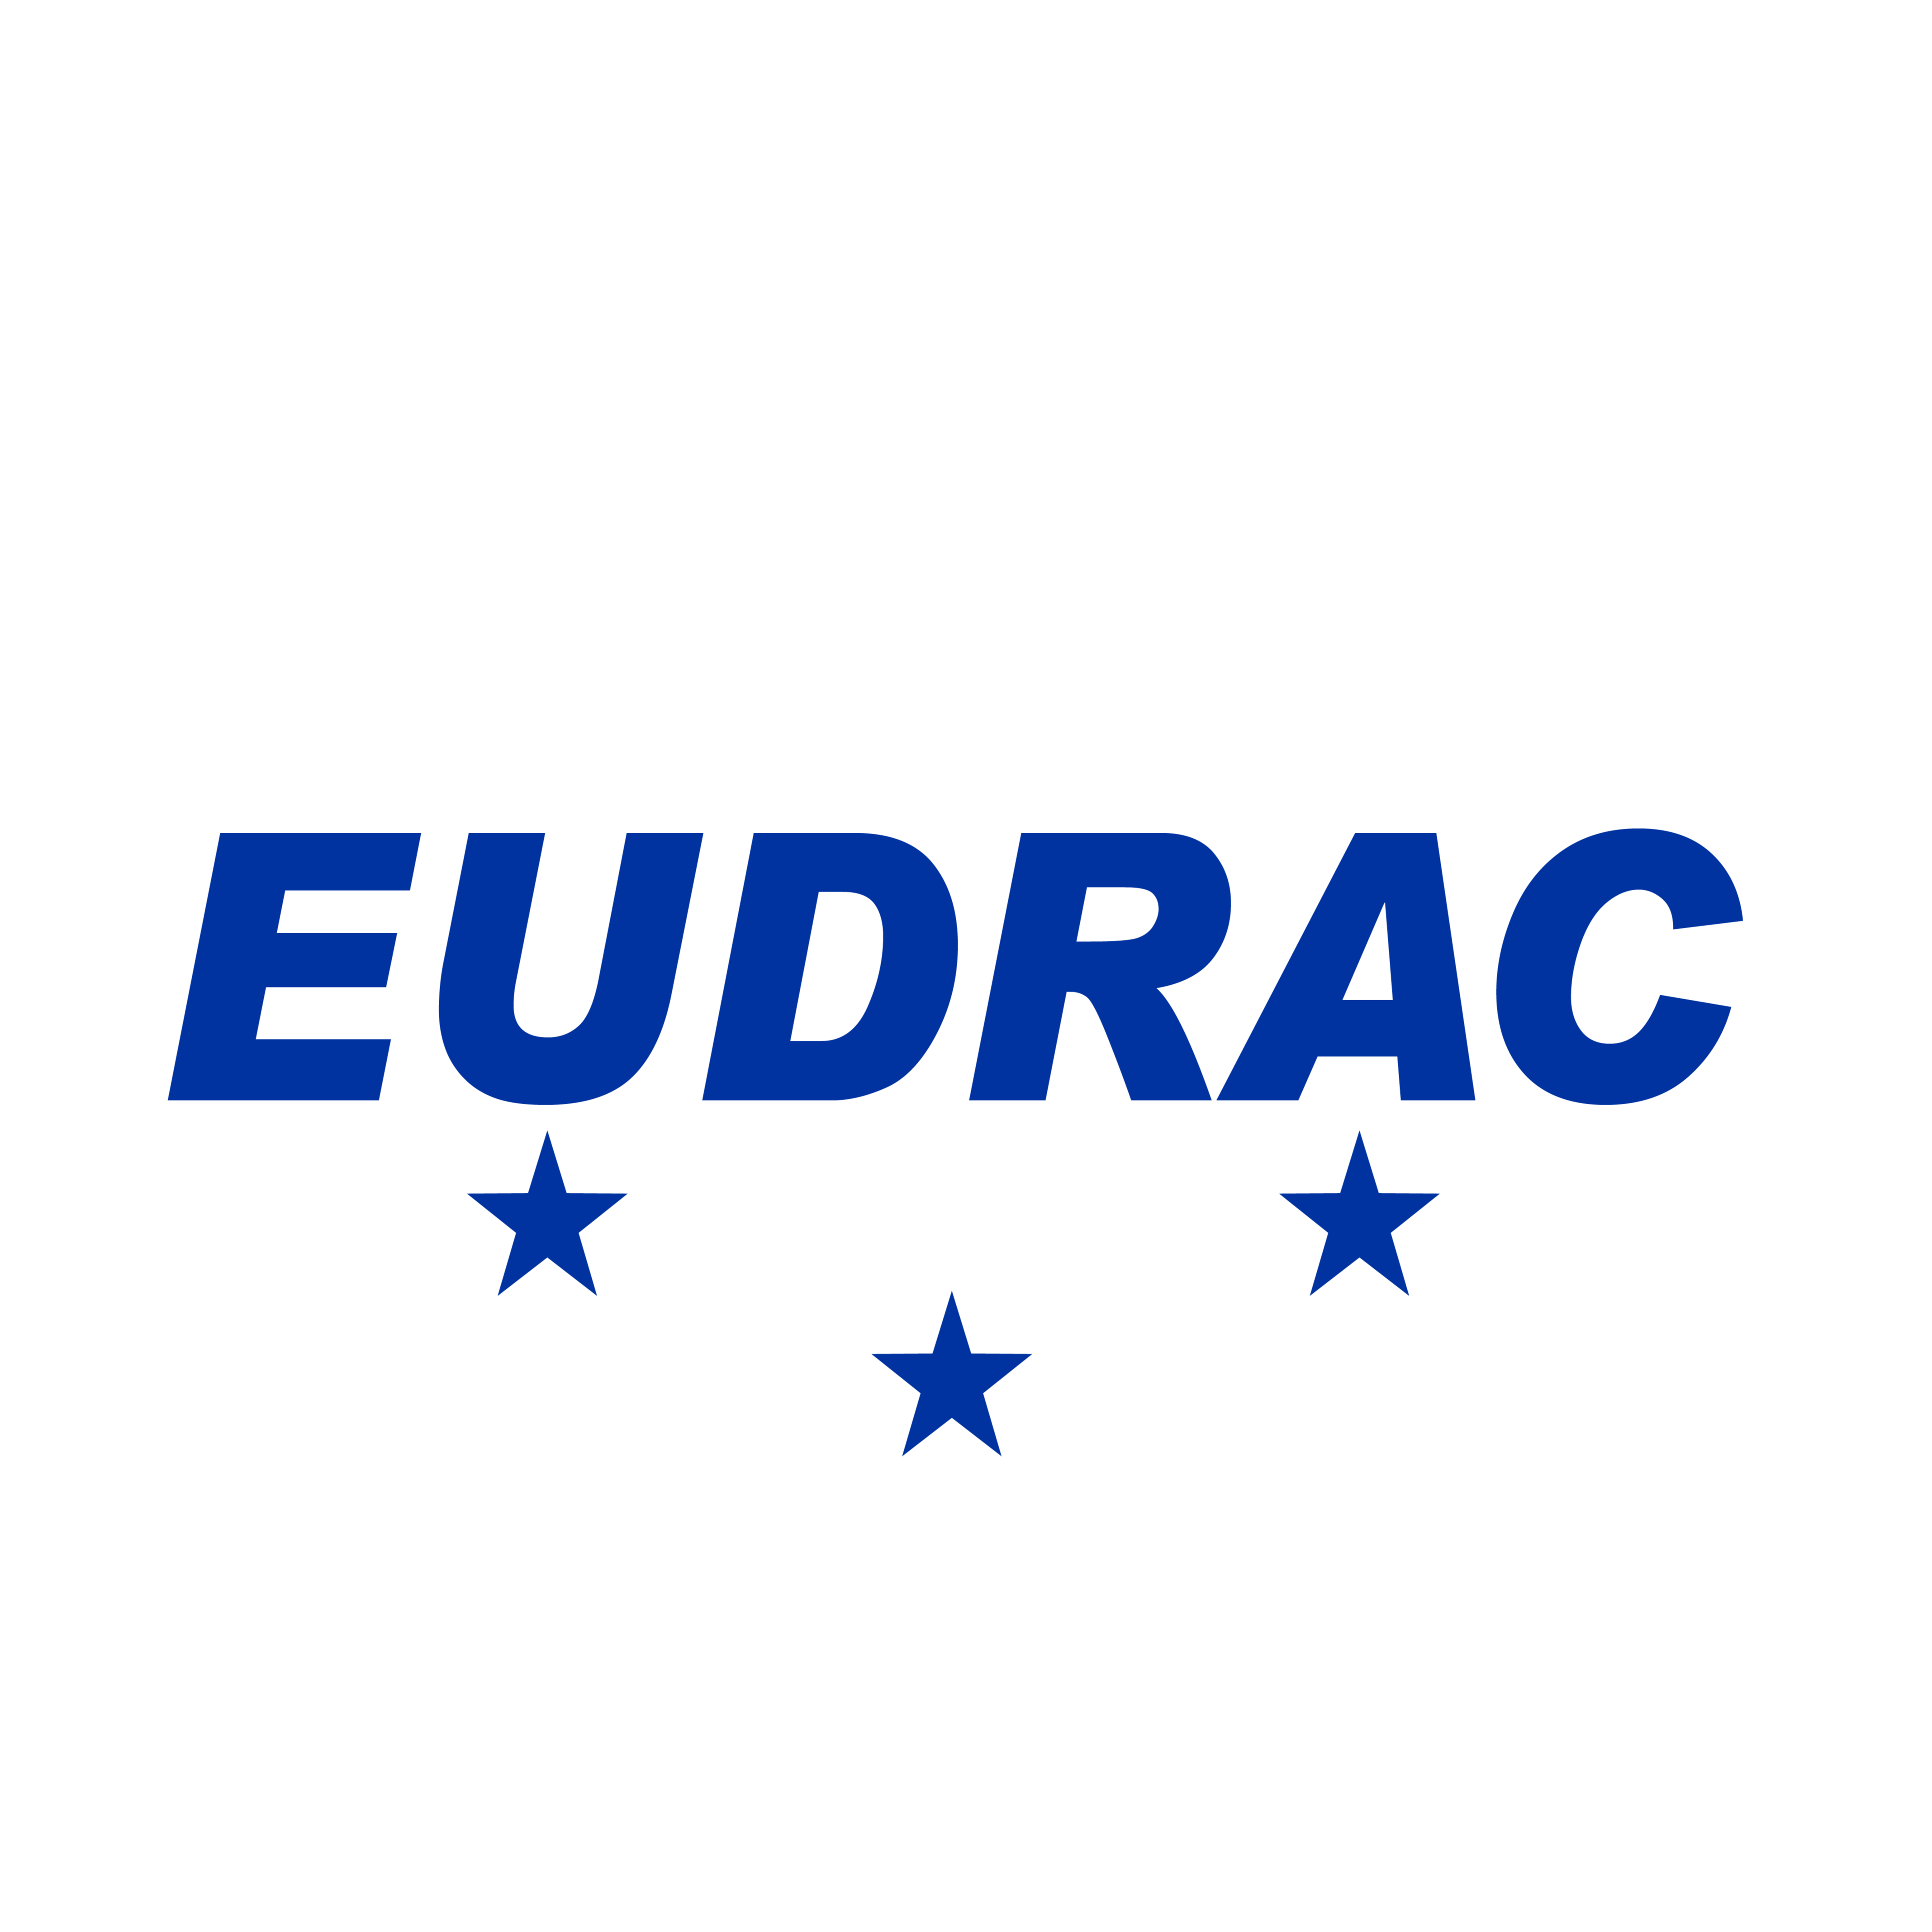 EUDRAC